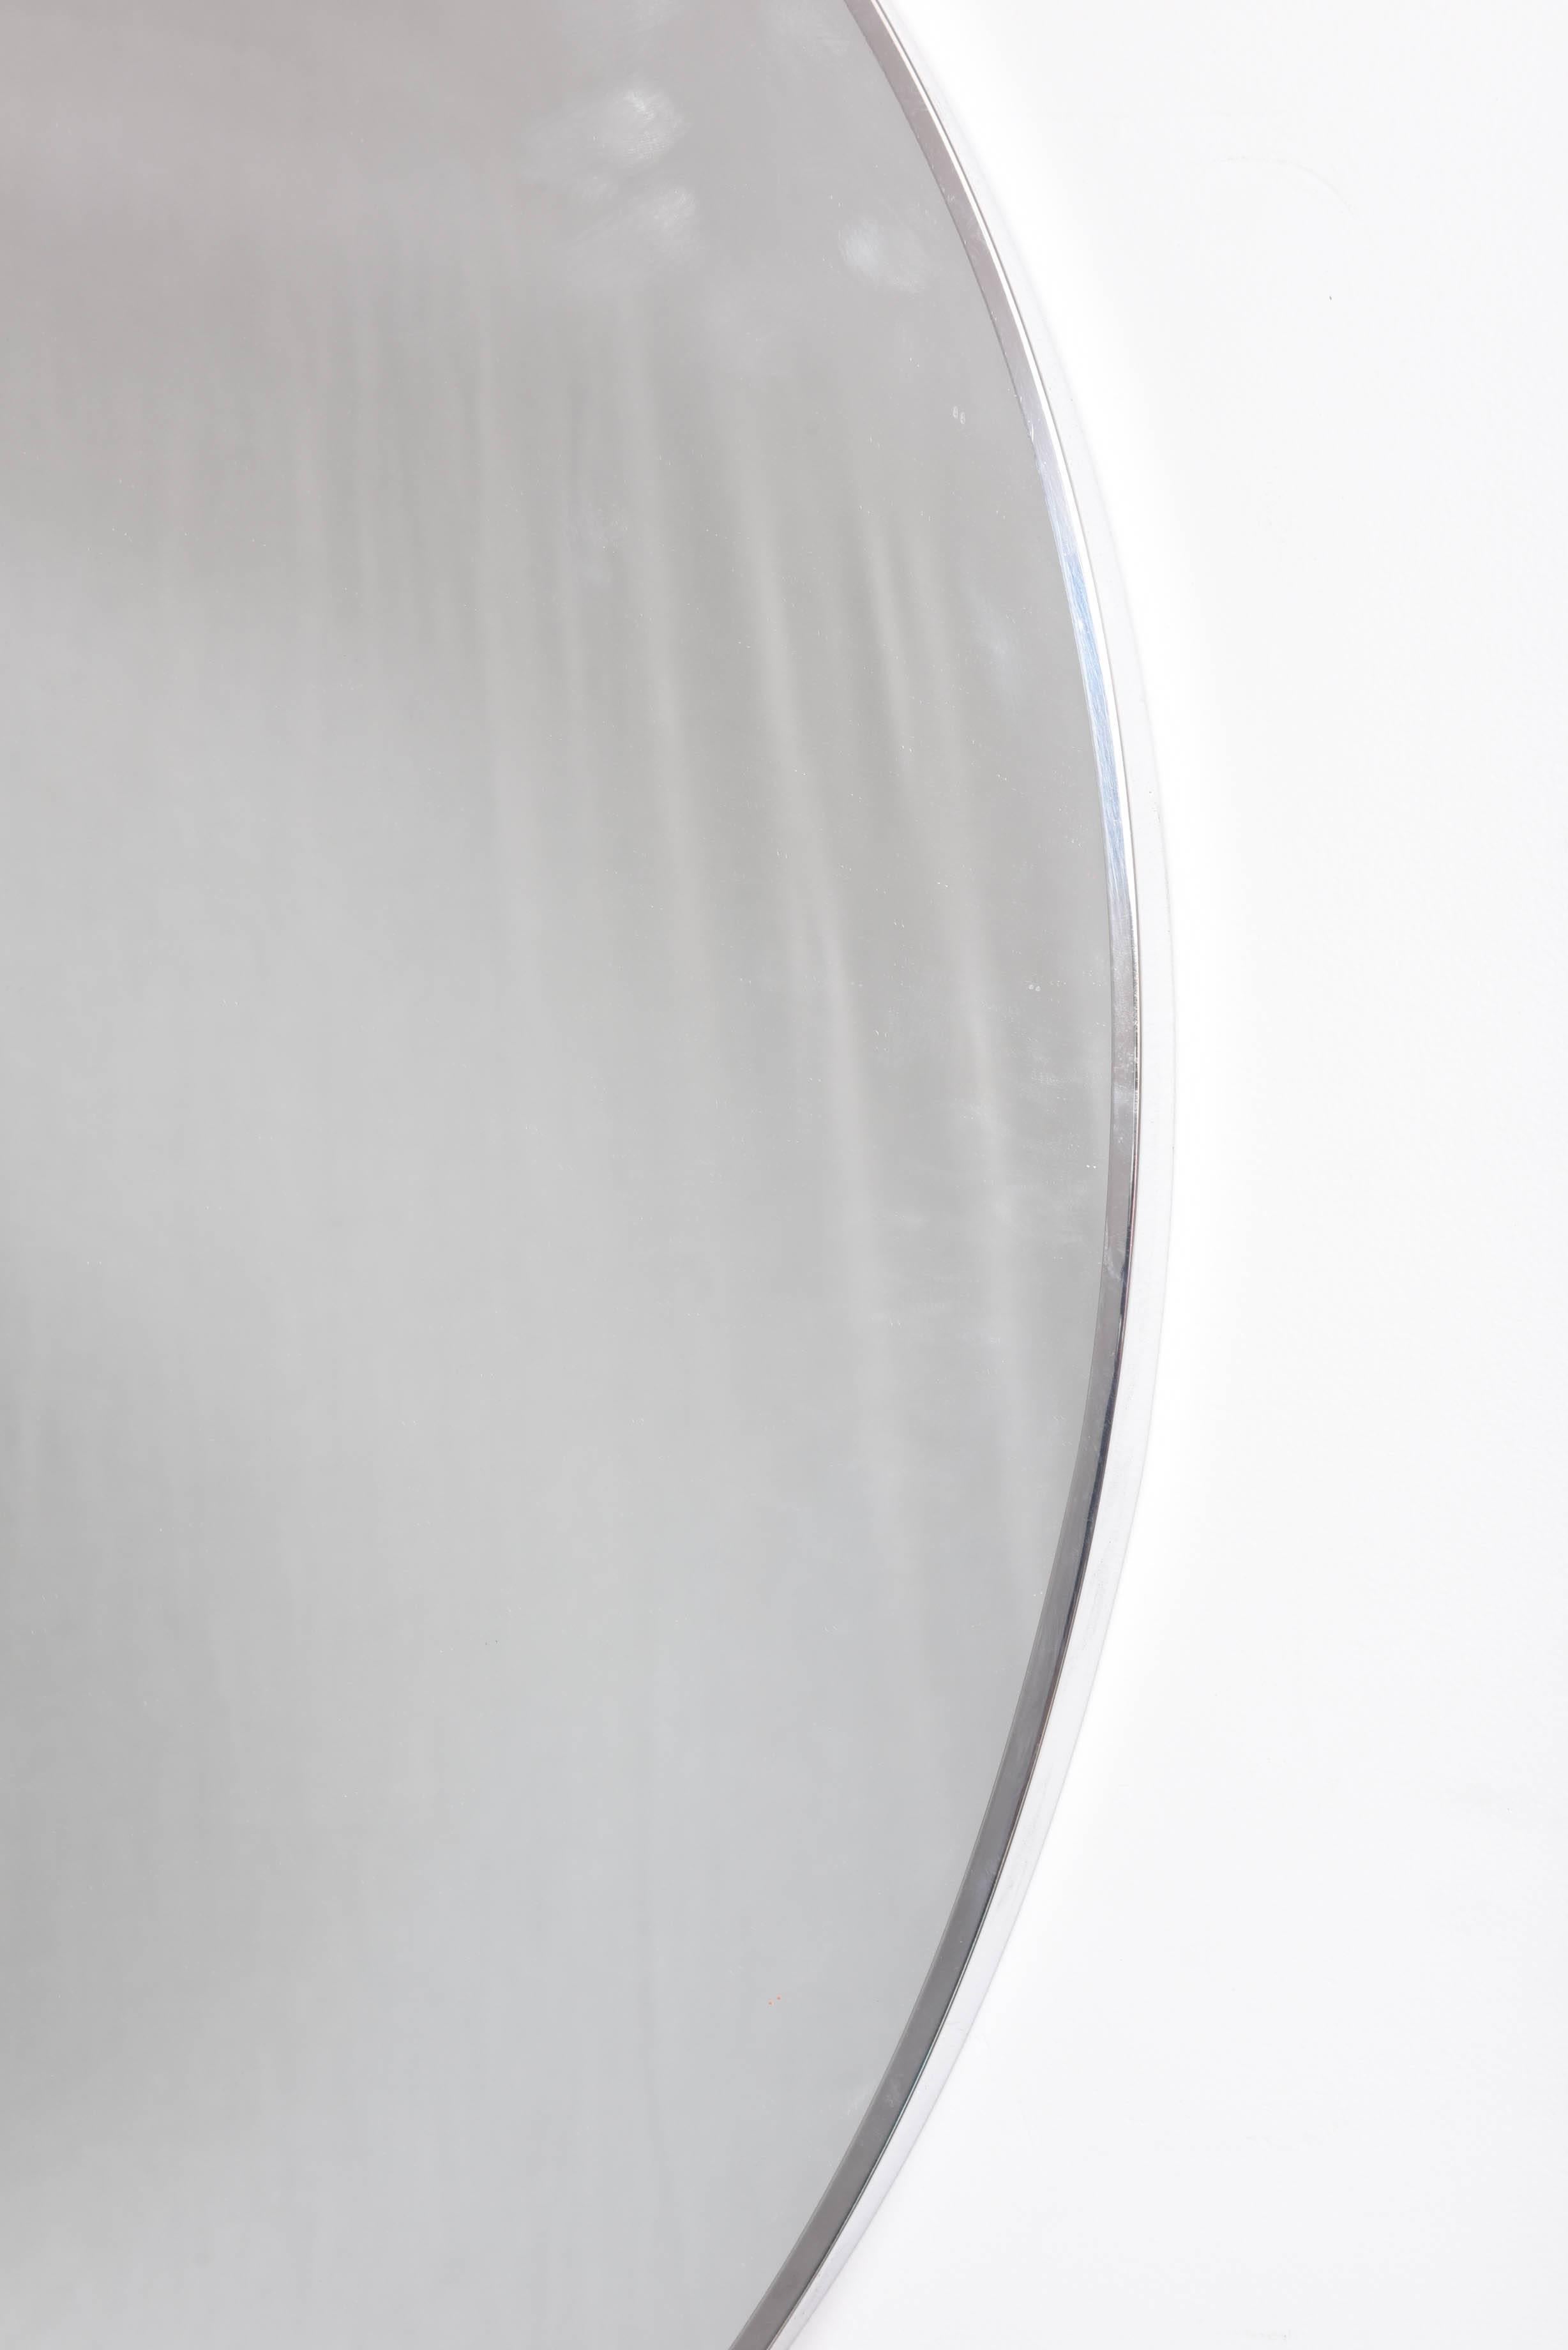 American 20th Century Minimalist Modern Convexed Center Stainless Steel Round Mirror